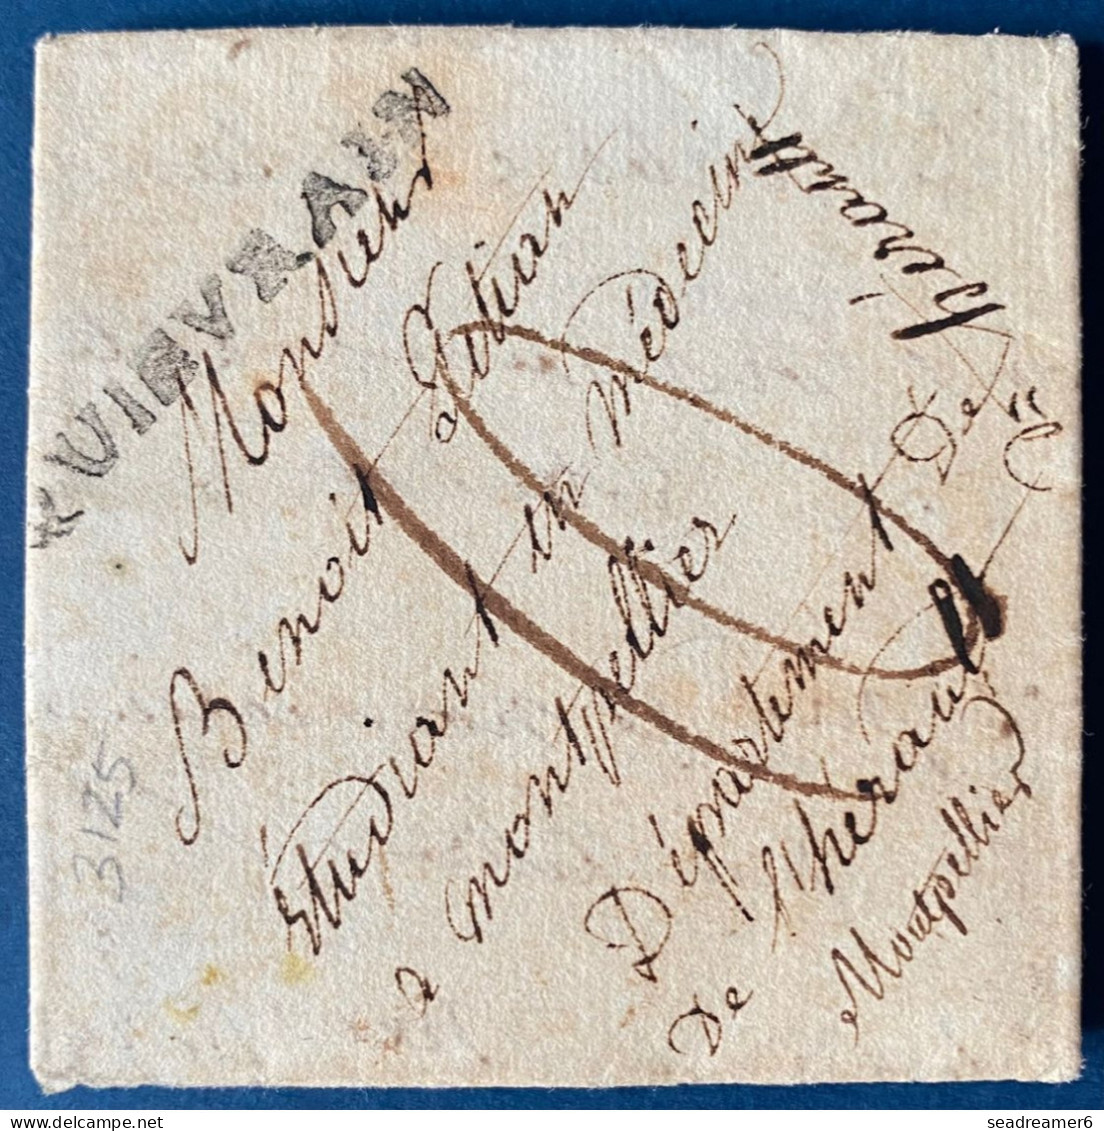 BELGIQUE Lettre De POMMEROEUL Du 28 MARS 1815 Marque QUIEVRAIN 42 X 4 Mm (HT Ind 30) Pour MONTPELLIER + Taxe 10 RRR - 1814-1815 (Gen.reg. Belgien)